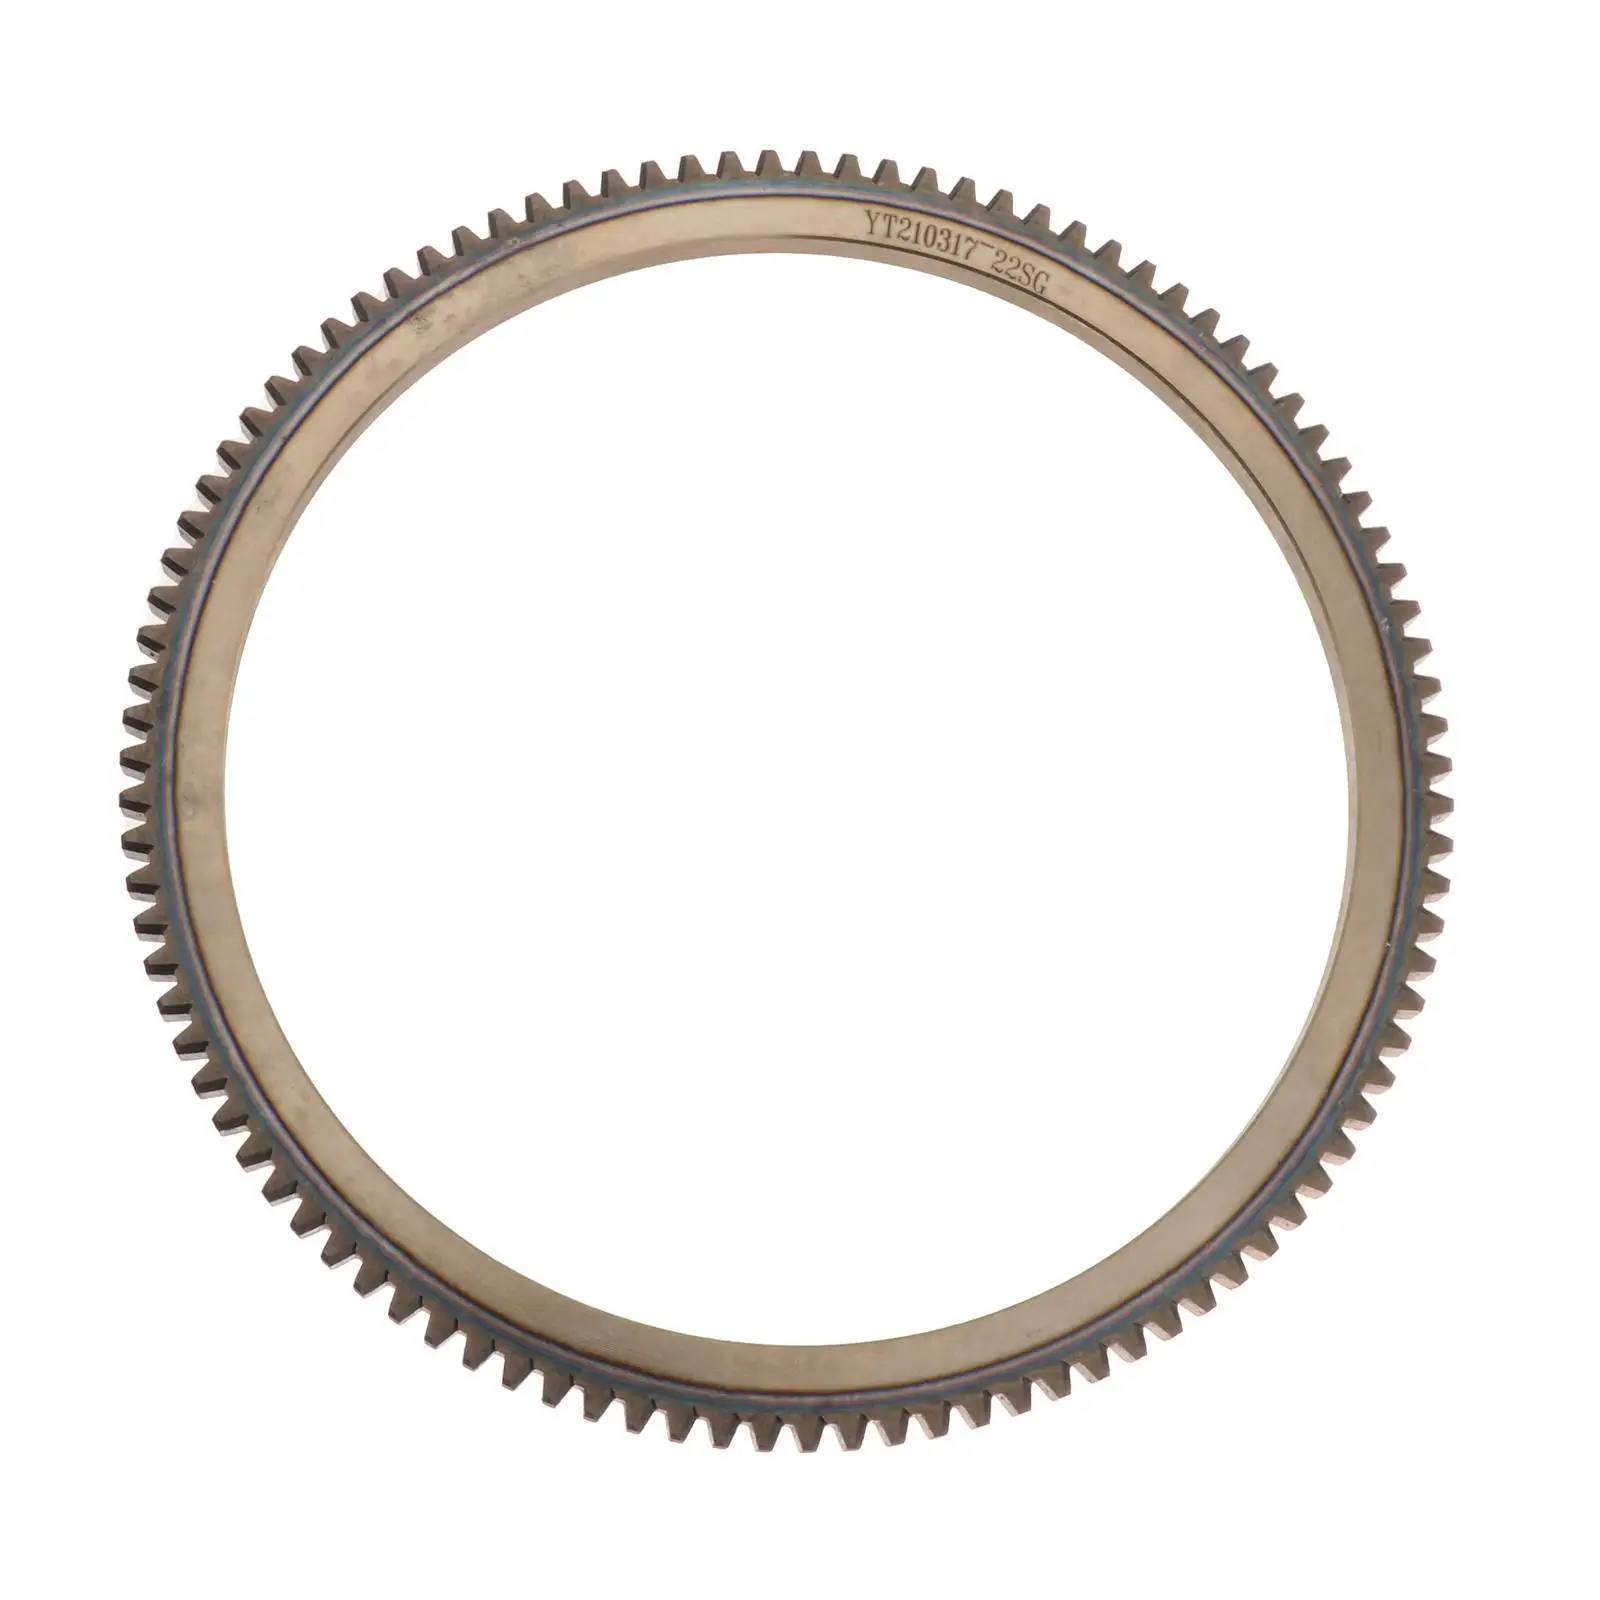 Зубчатые кольца из легированной стали для подвесного мотора Parsun 2T 9,8-18 л.с. - 3